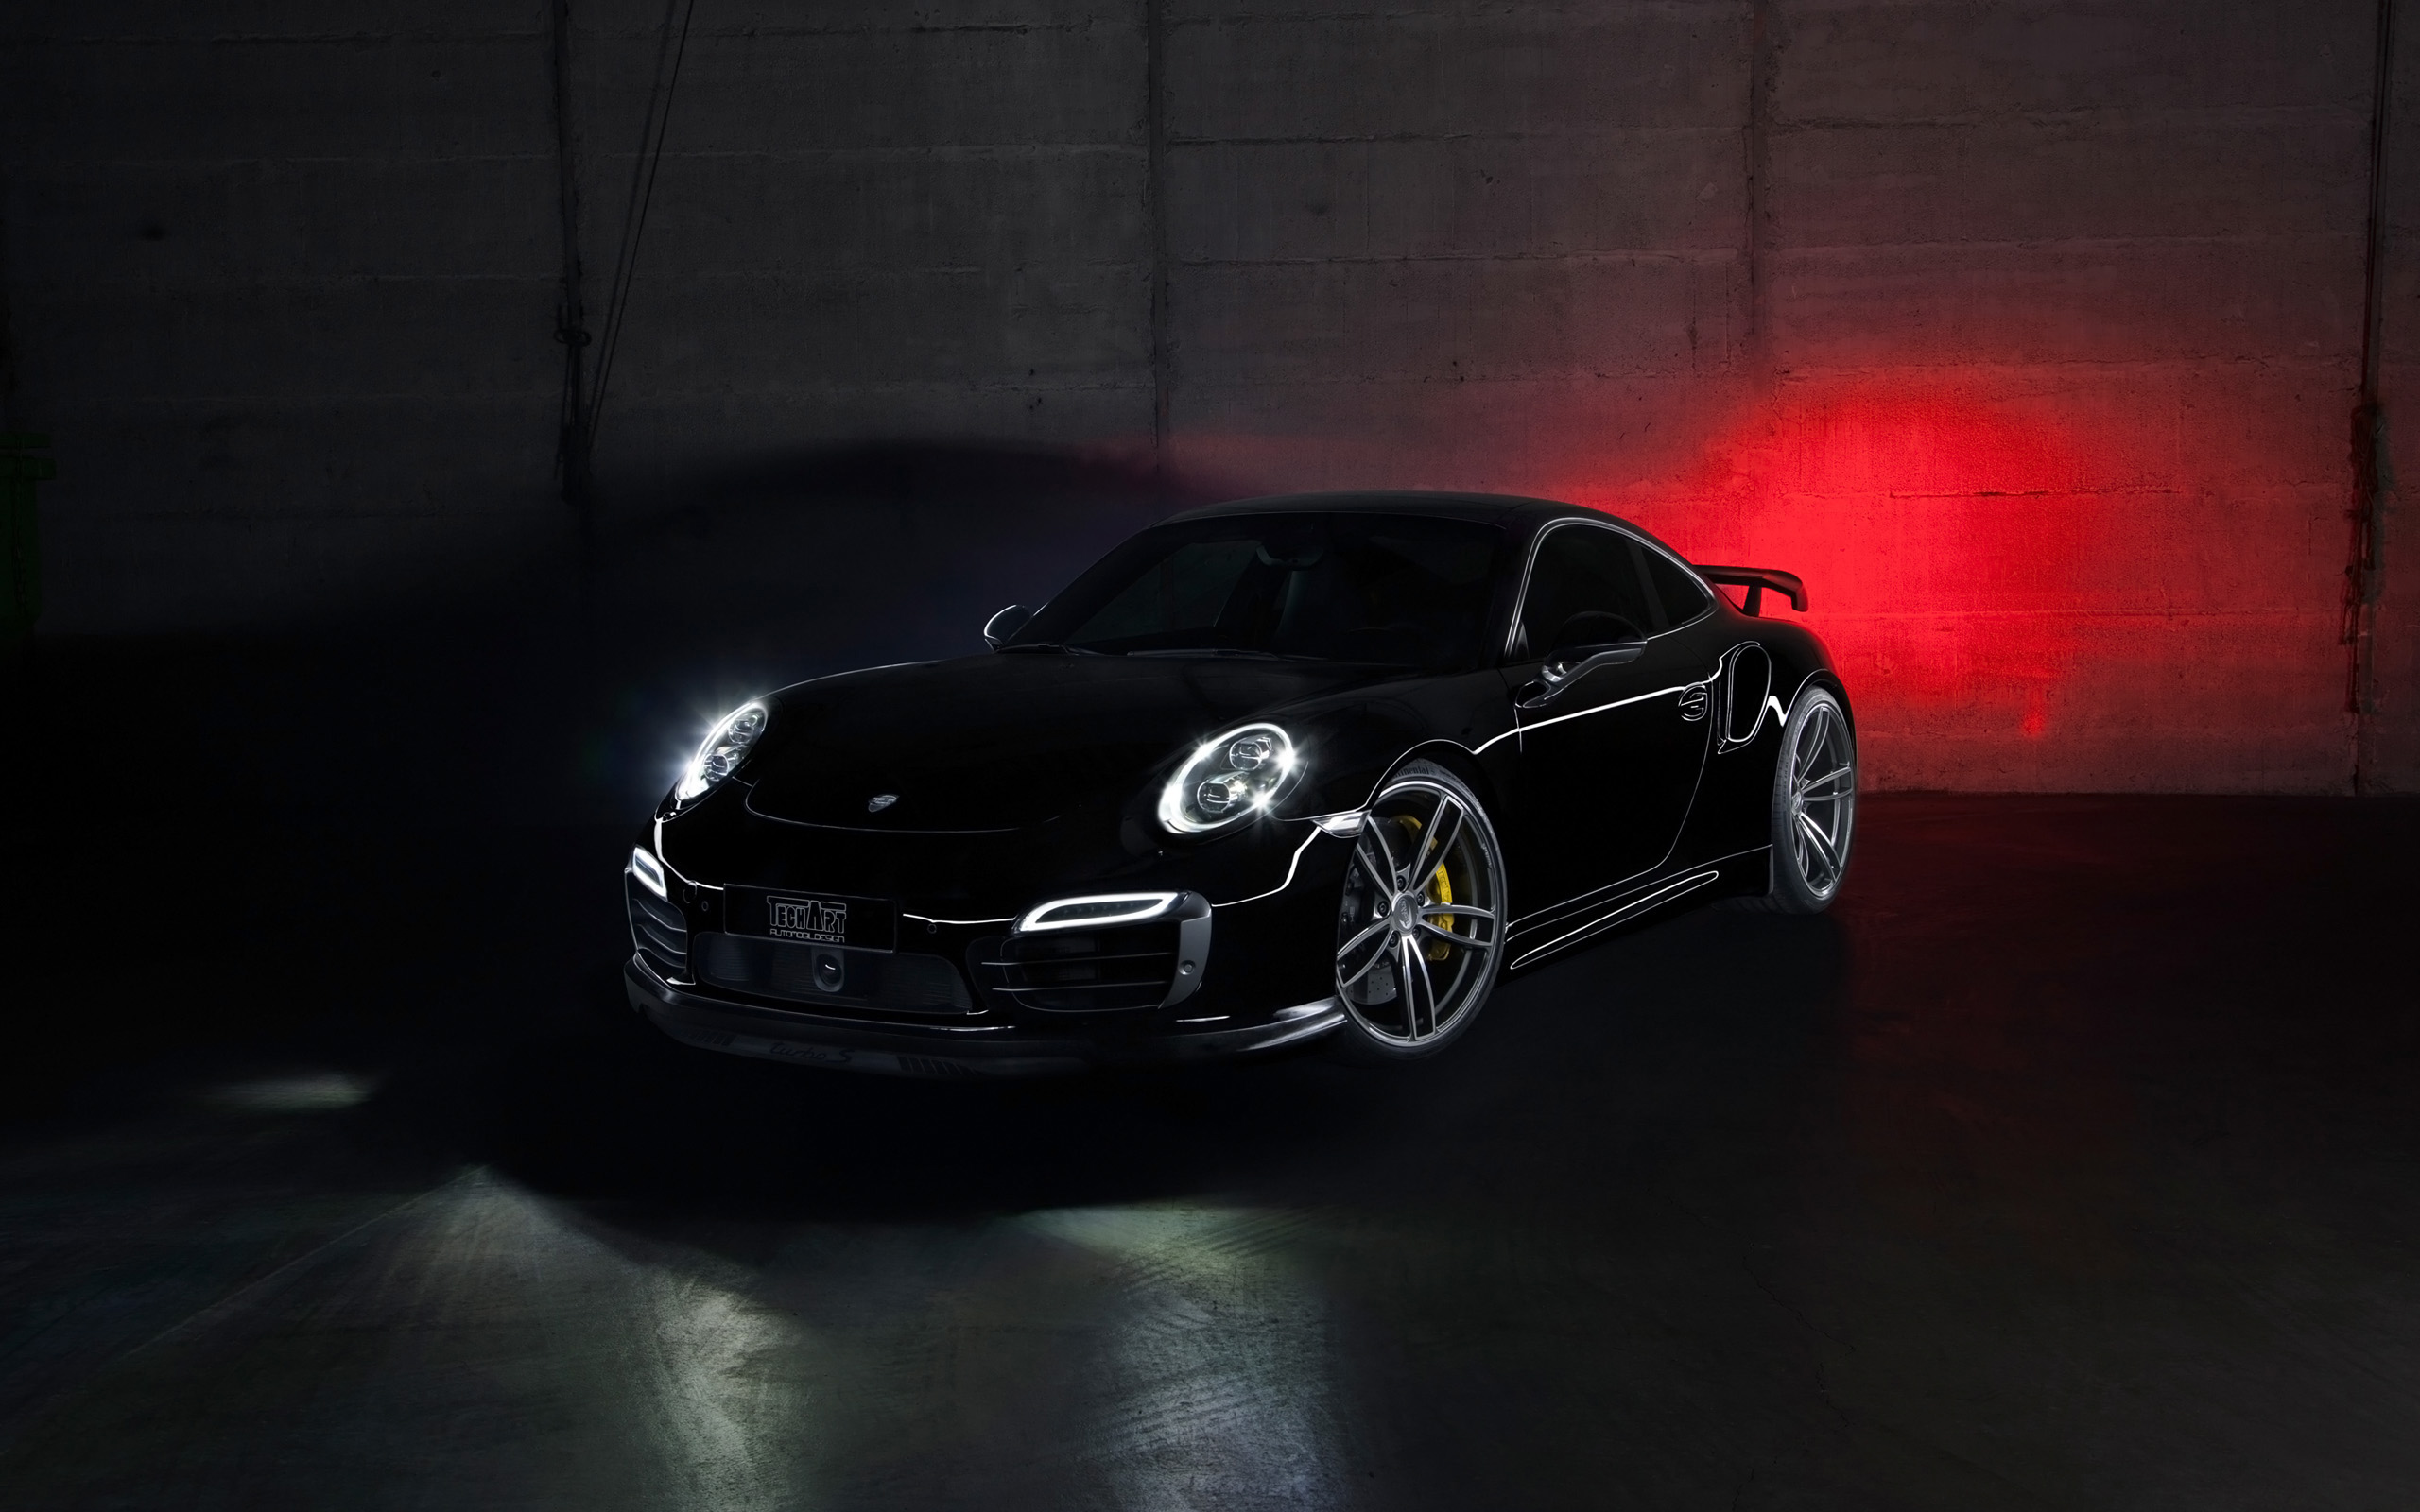 Descarga gratuita de fondo de pantalla para móvil de Porsche 911 Turbo, Porsche 911, Porsche, Vehículos.